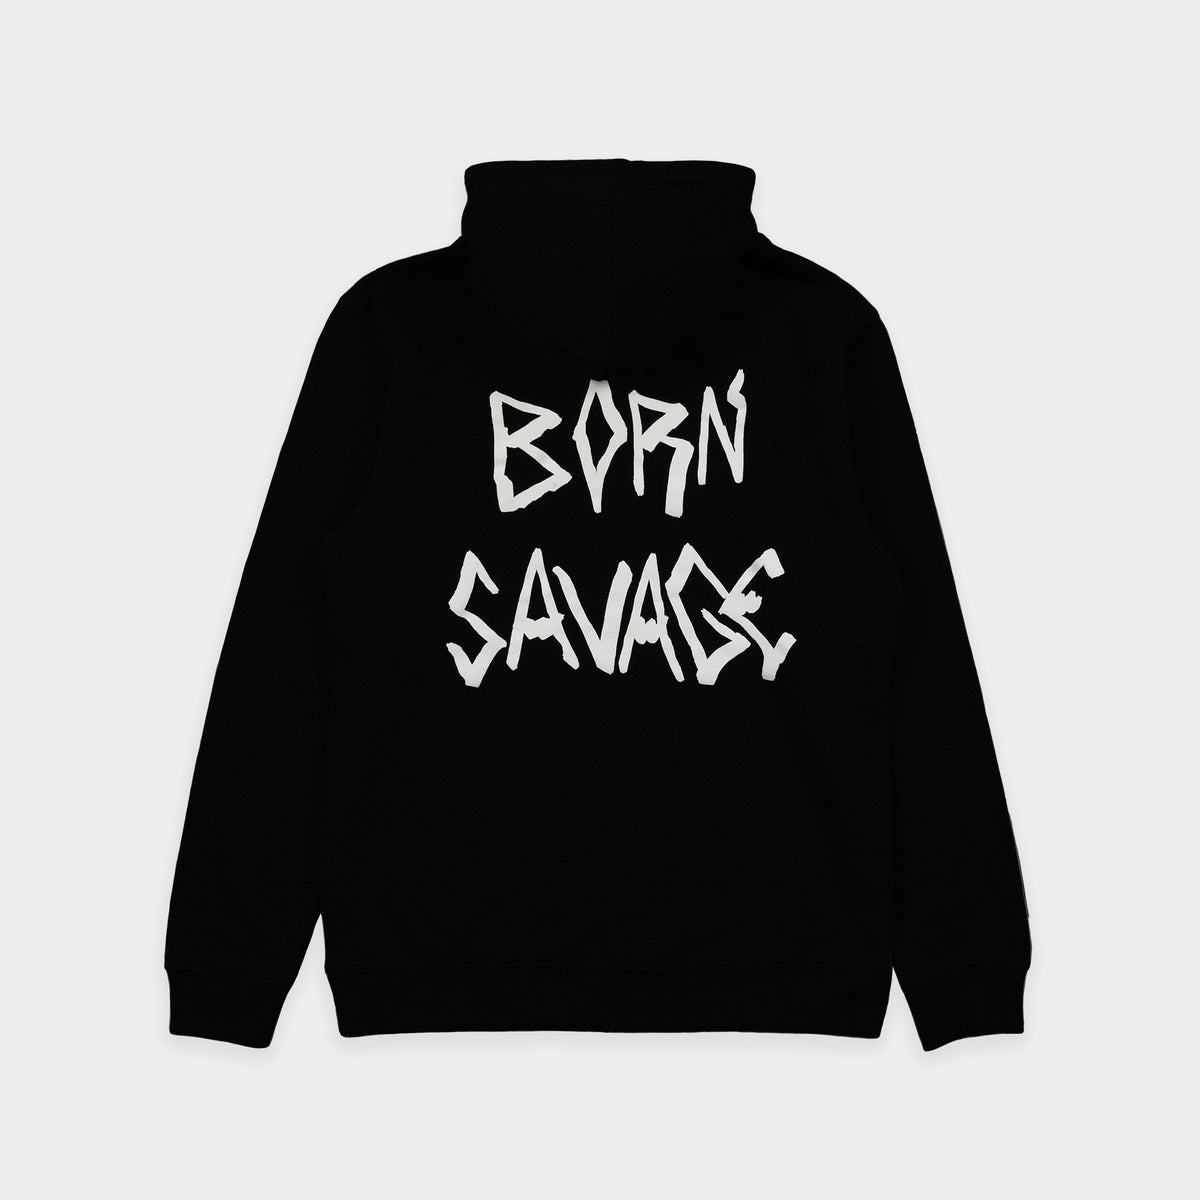 BORN SAVAGE - Hooded Sweatshirt